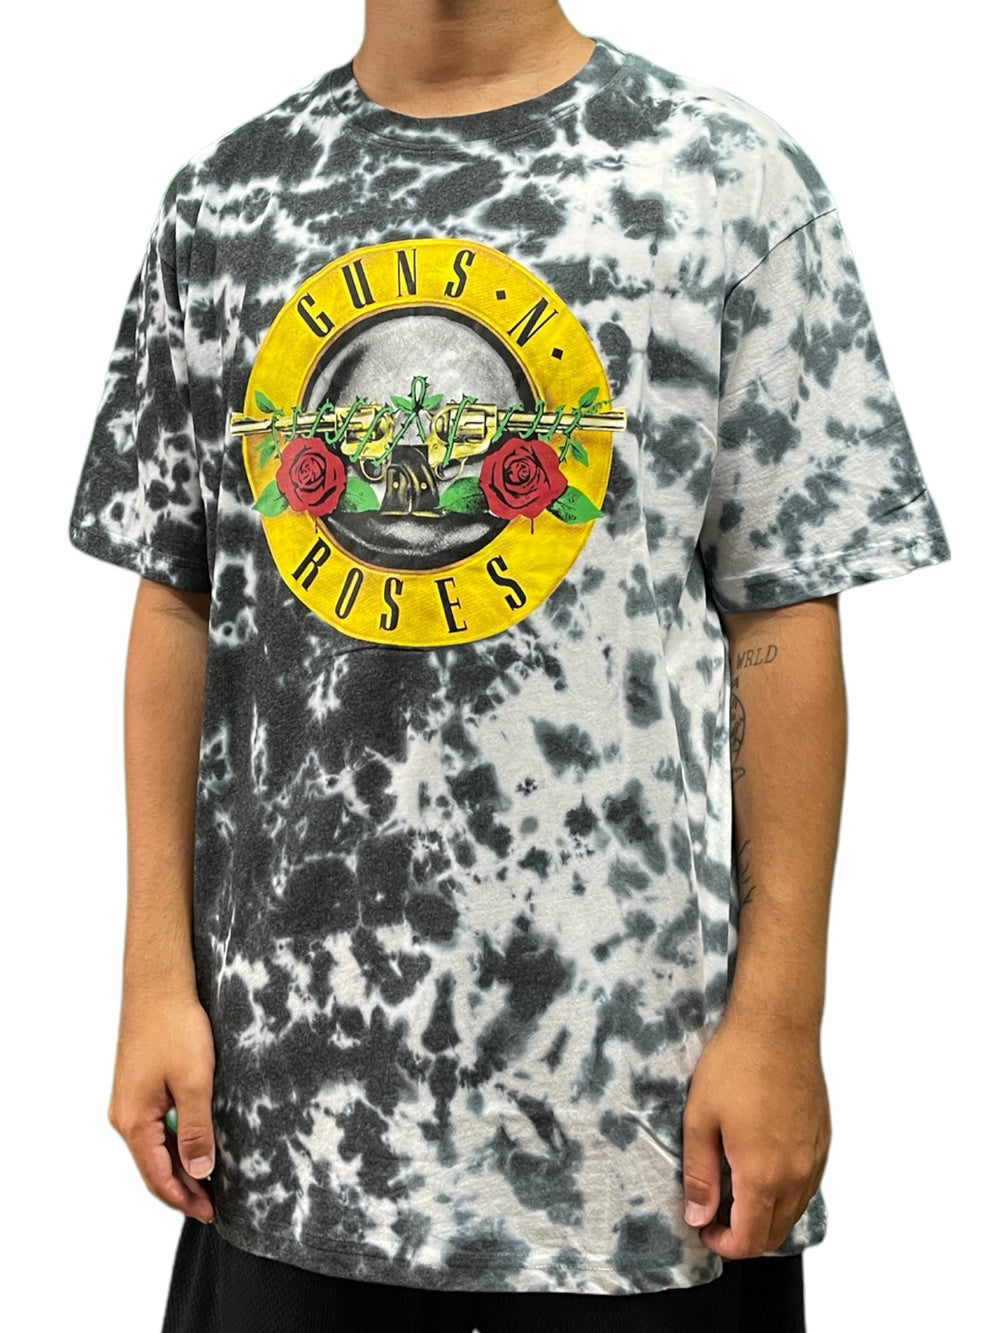 Guns N' Roses - Logo WHT (Dip-Dye) Official Unisex T Shirt Various Sizes NEW